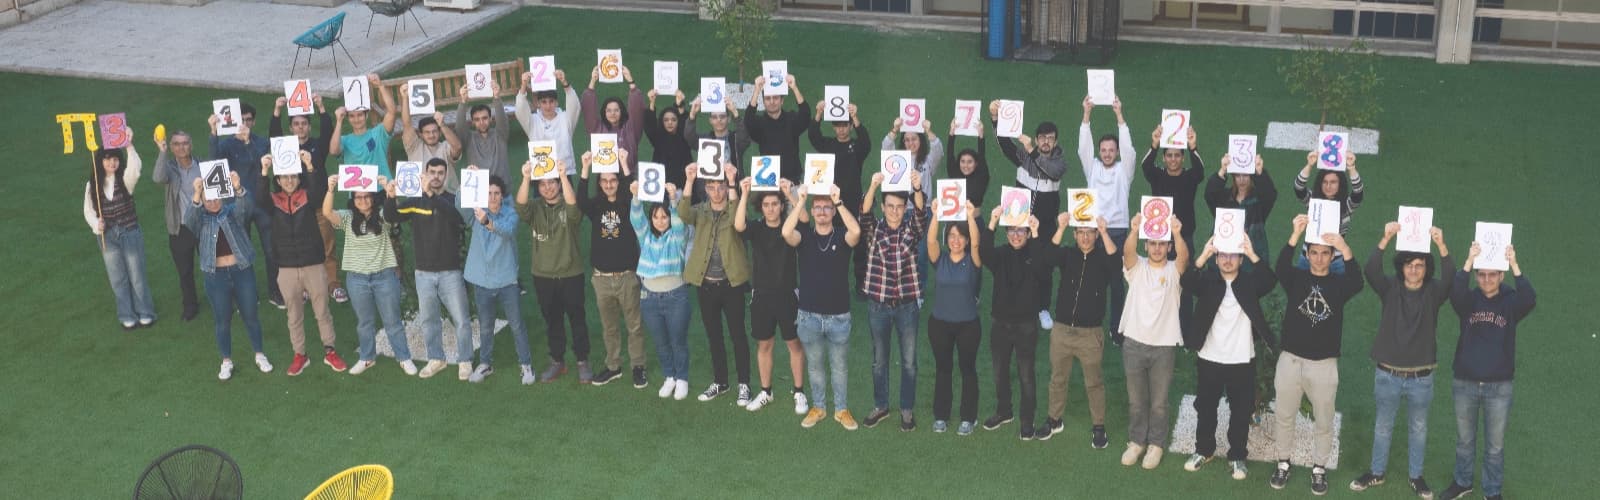 El alumnado de Física Computacional celebra el ‘Día de Pi’ con una vistosa iniciativa